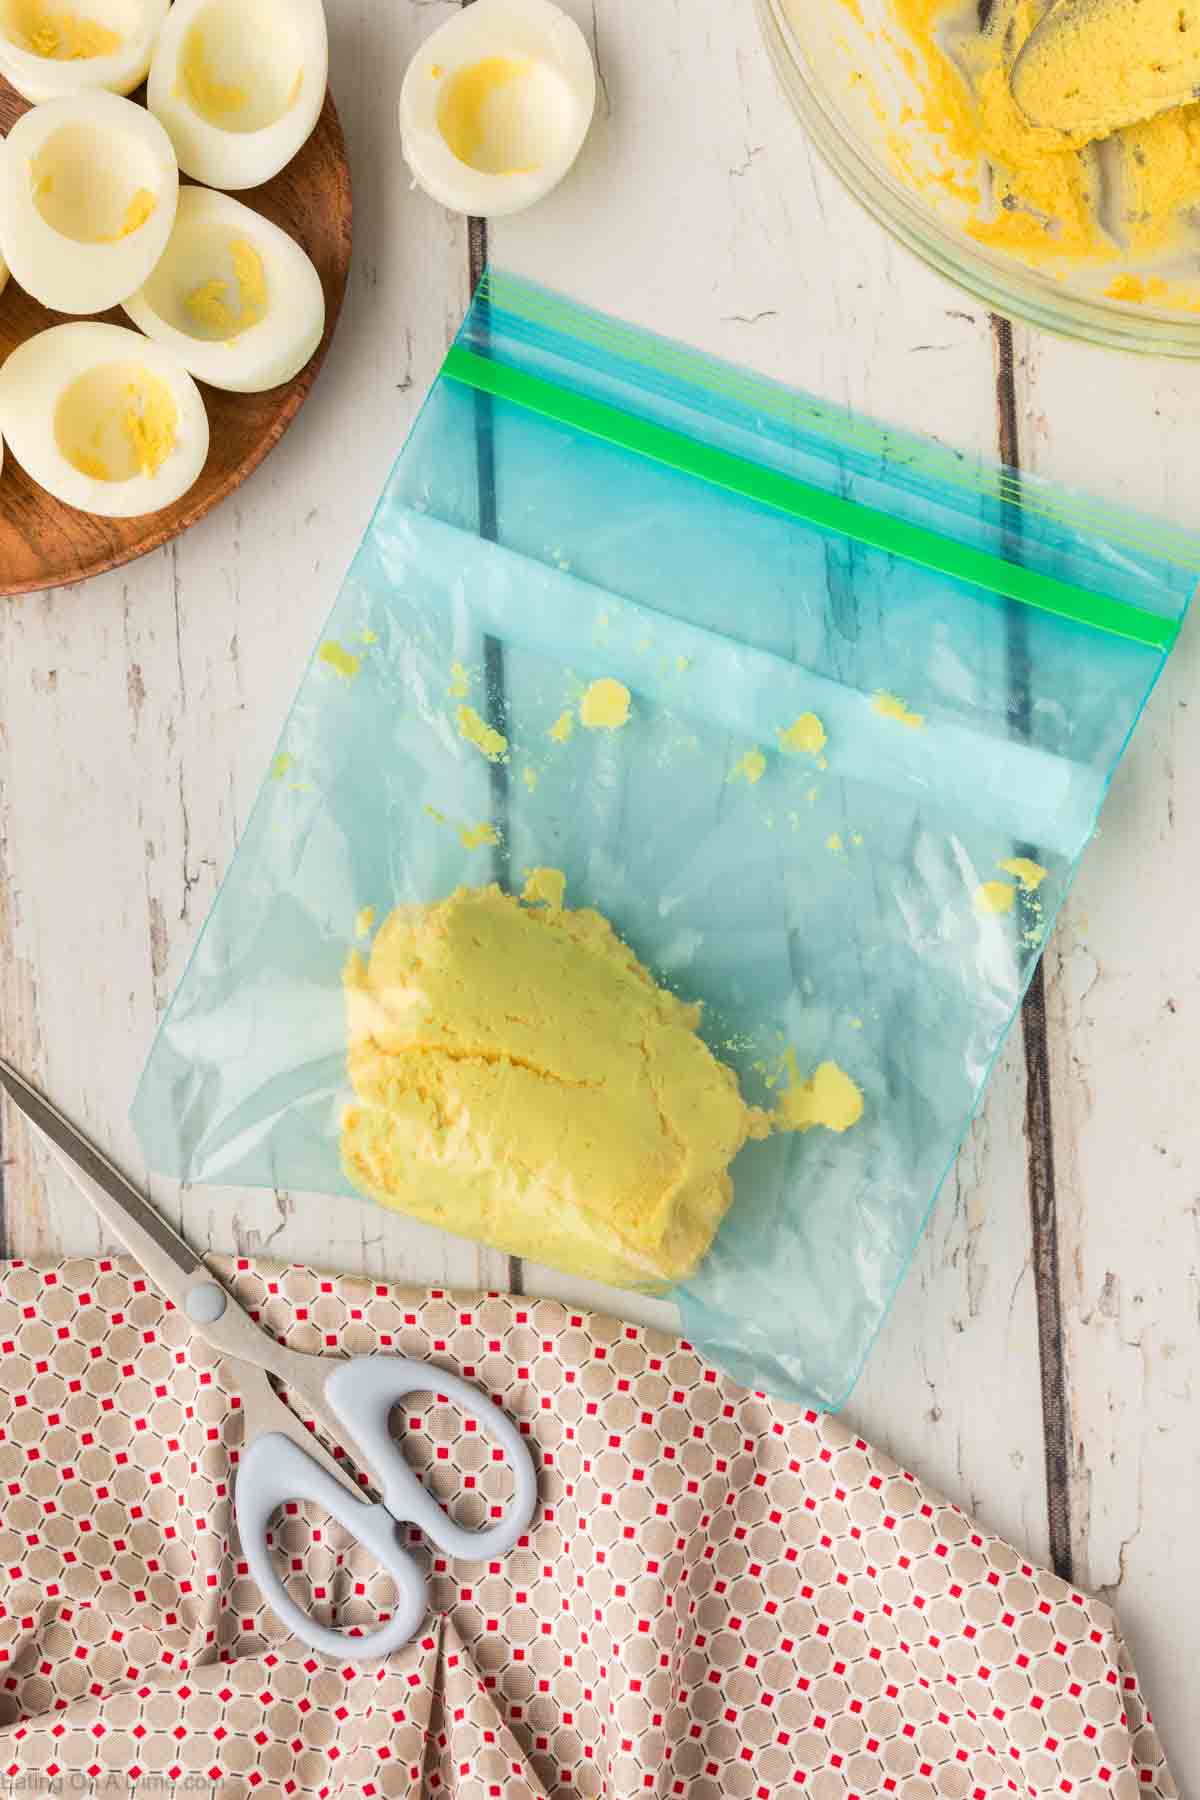 Placing egg yolk mixture in a ziplock bag